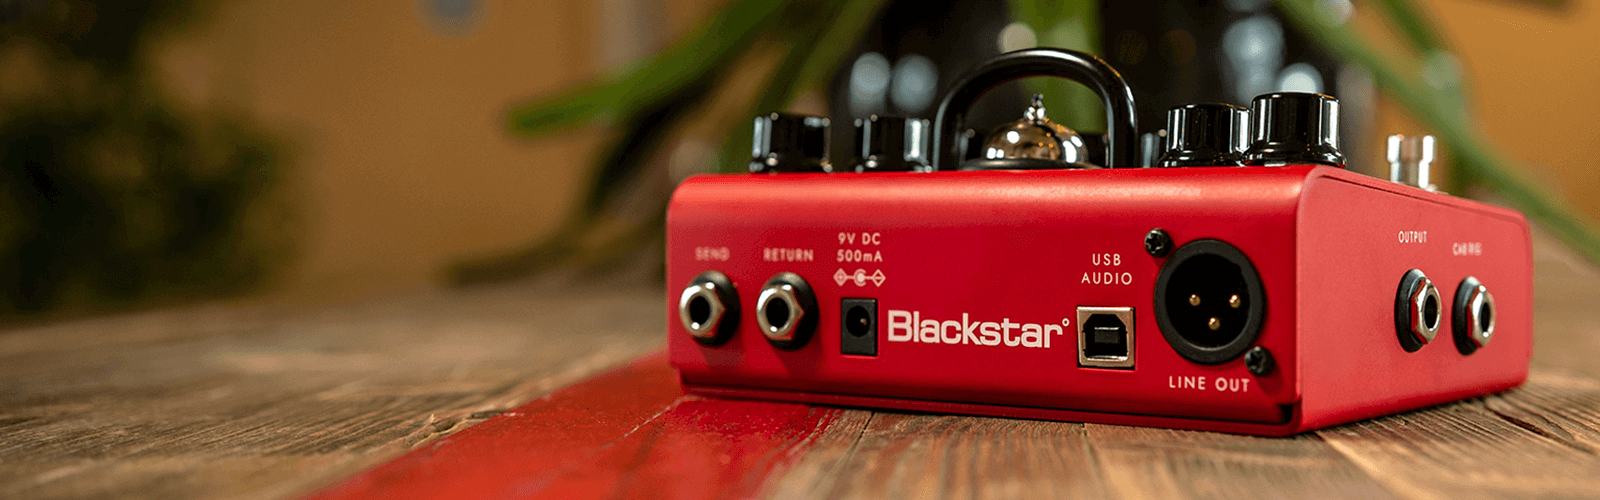 Schrägansicht eines roten Blackstar-Pedals